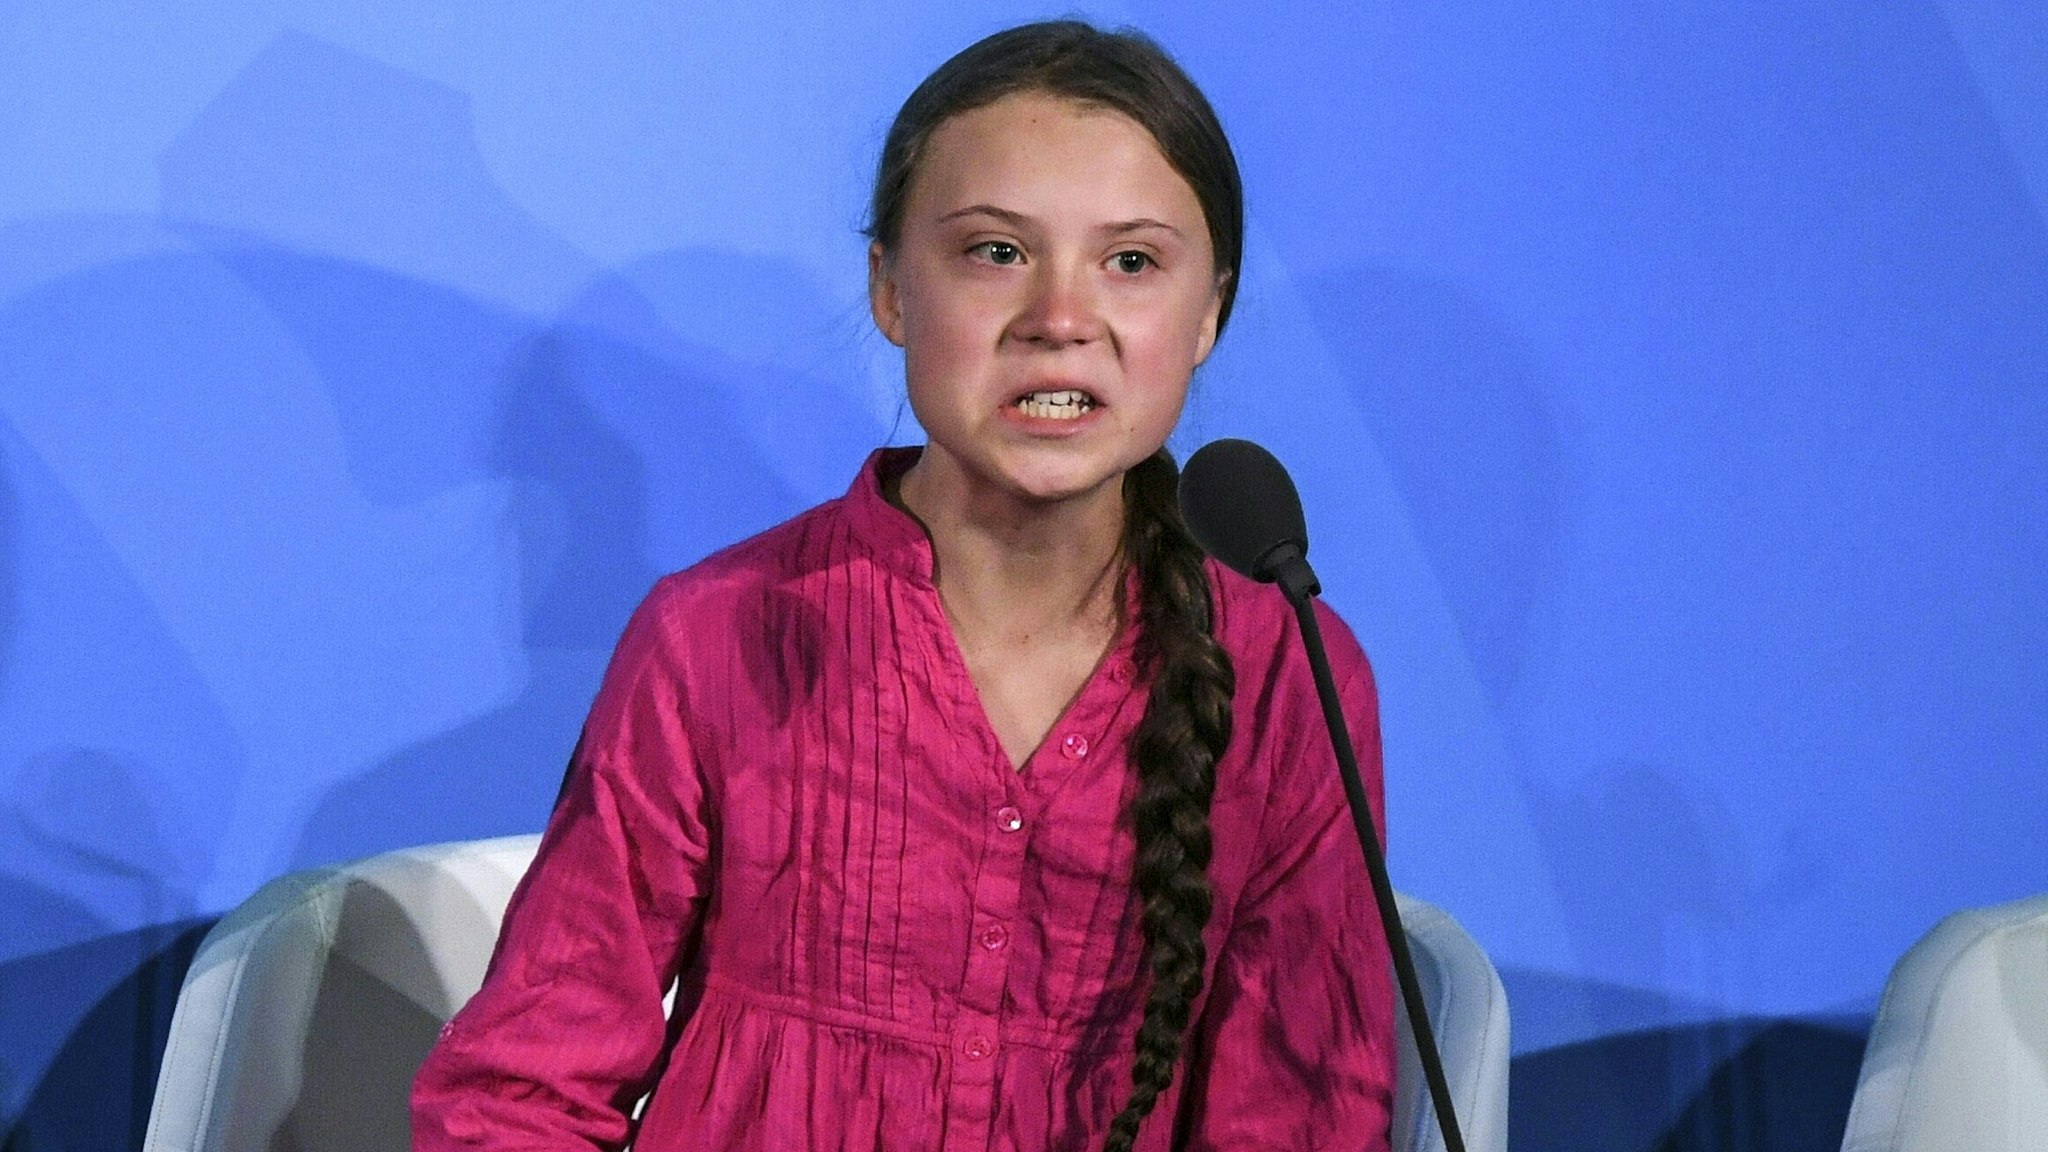 Greta Thunberg speaks at the United Nations